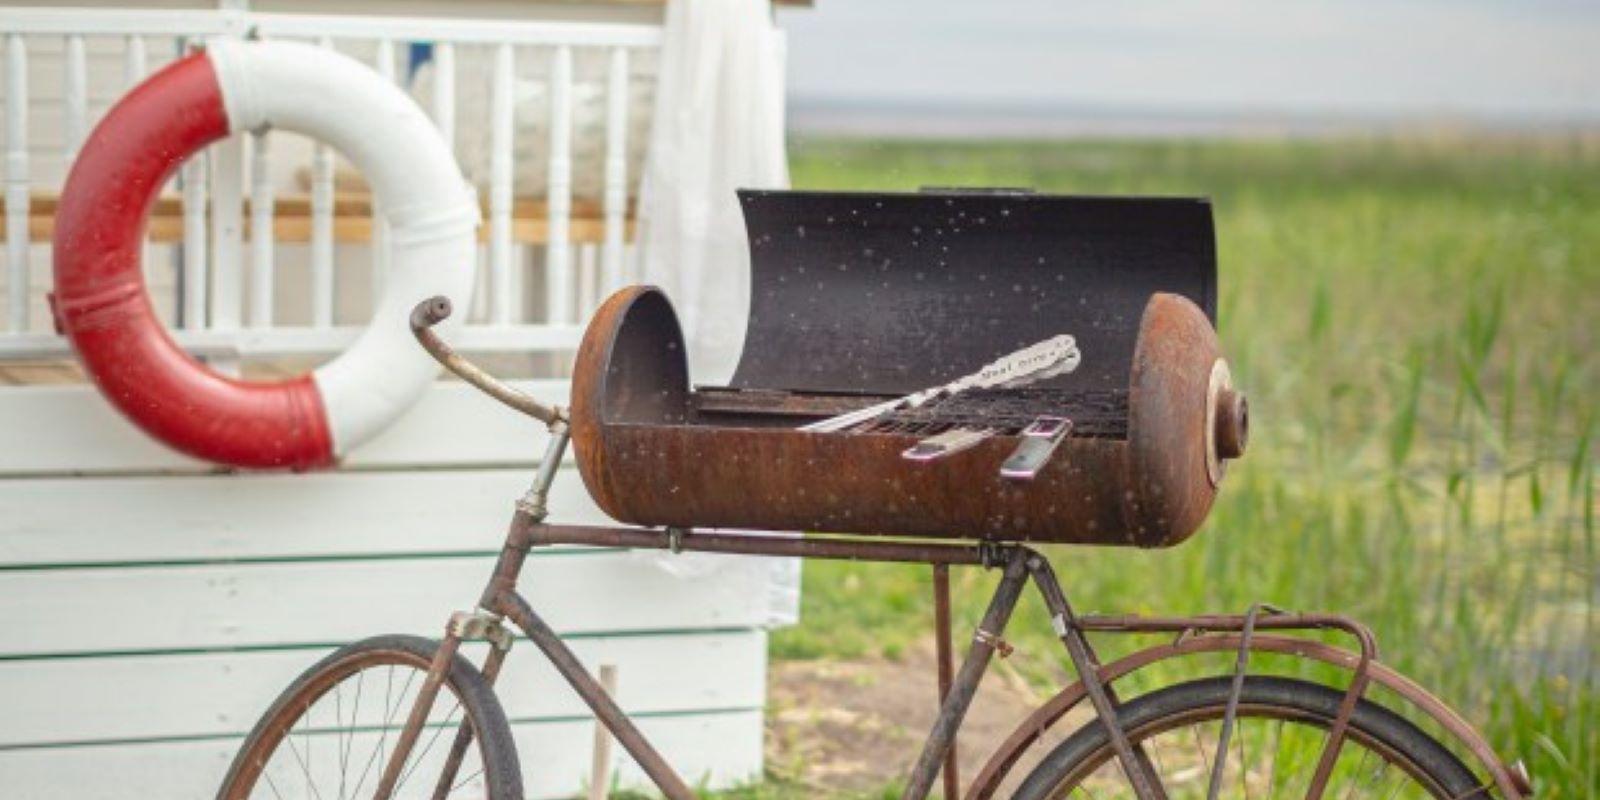 Paarmaja ning omapärane jalgrattast inspireeritud grill